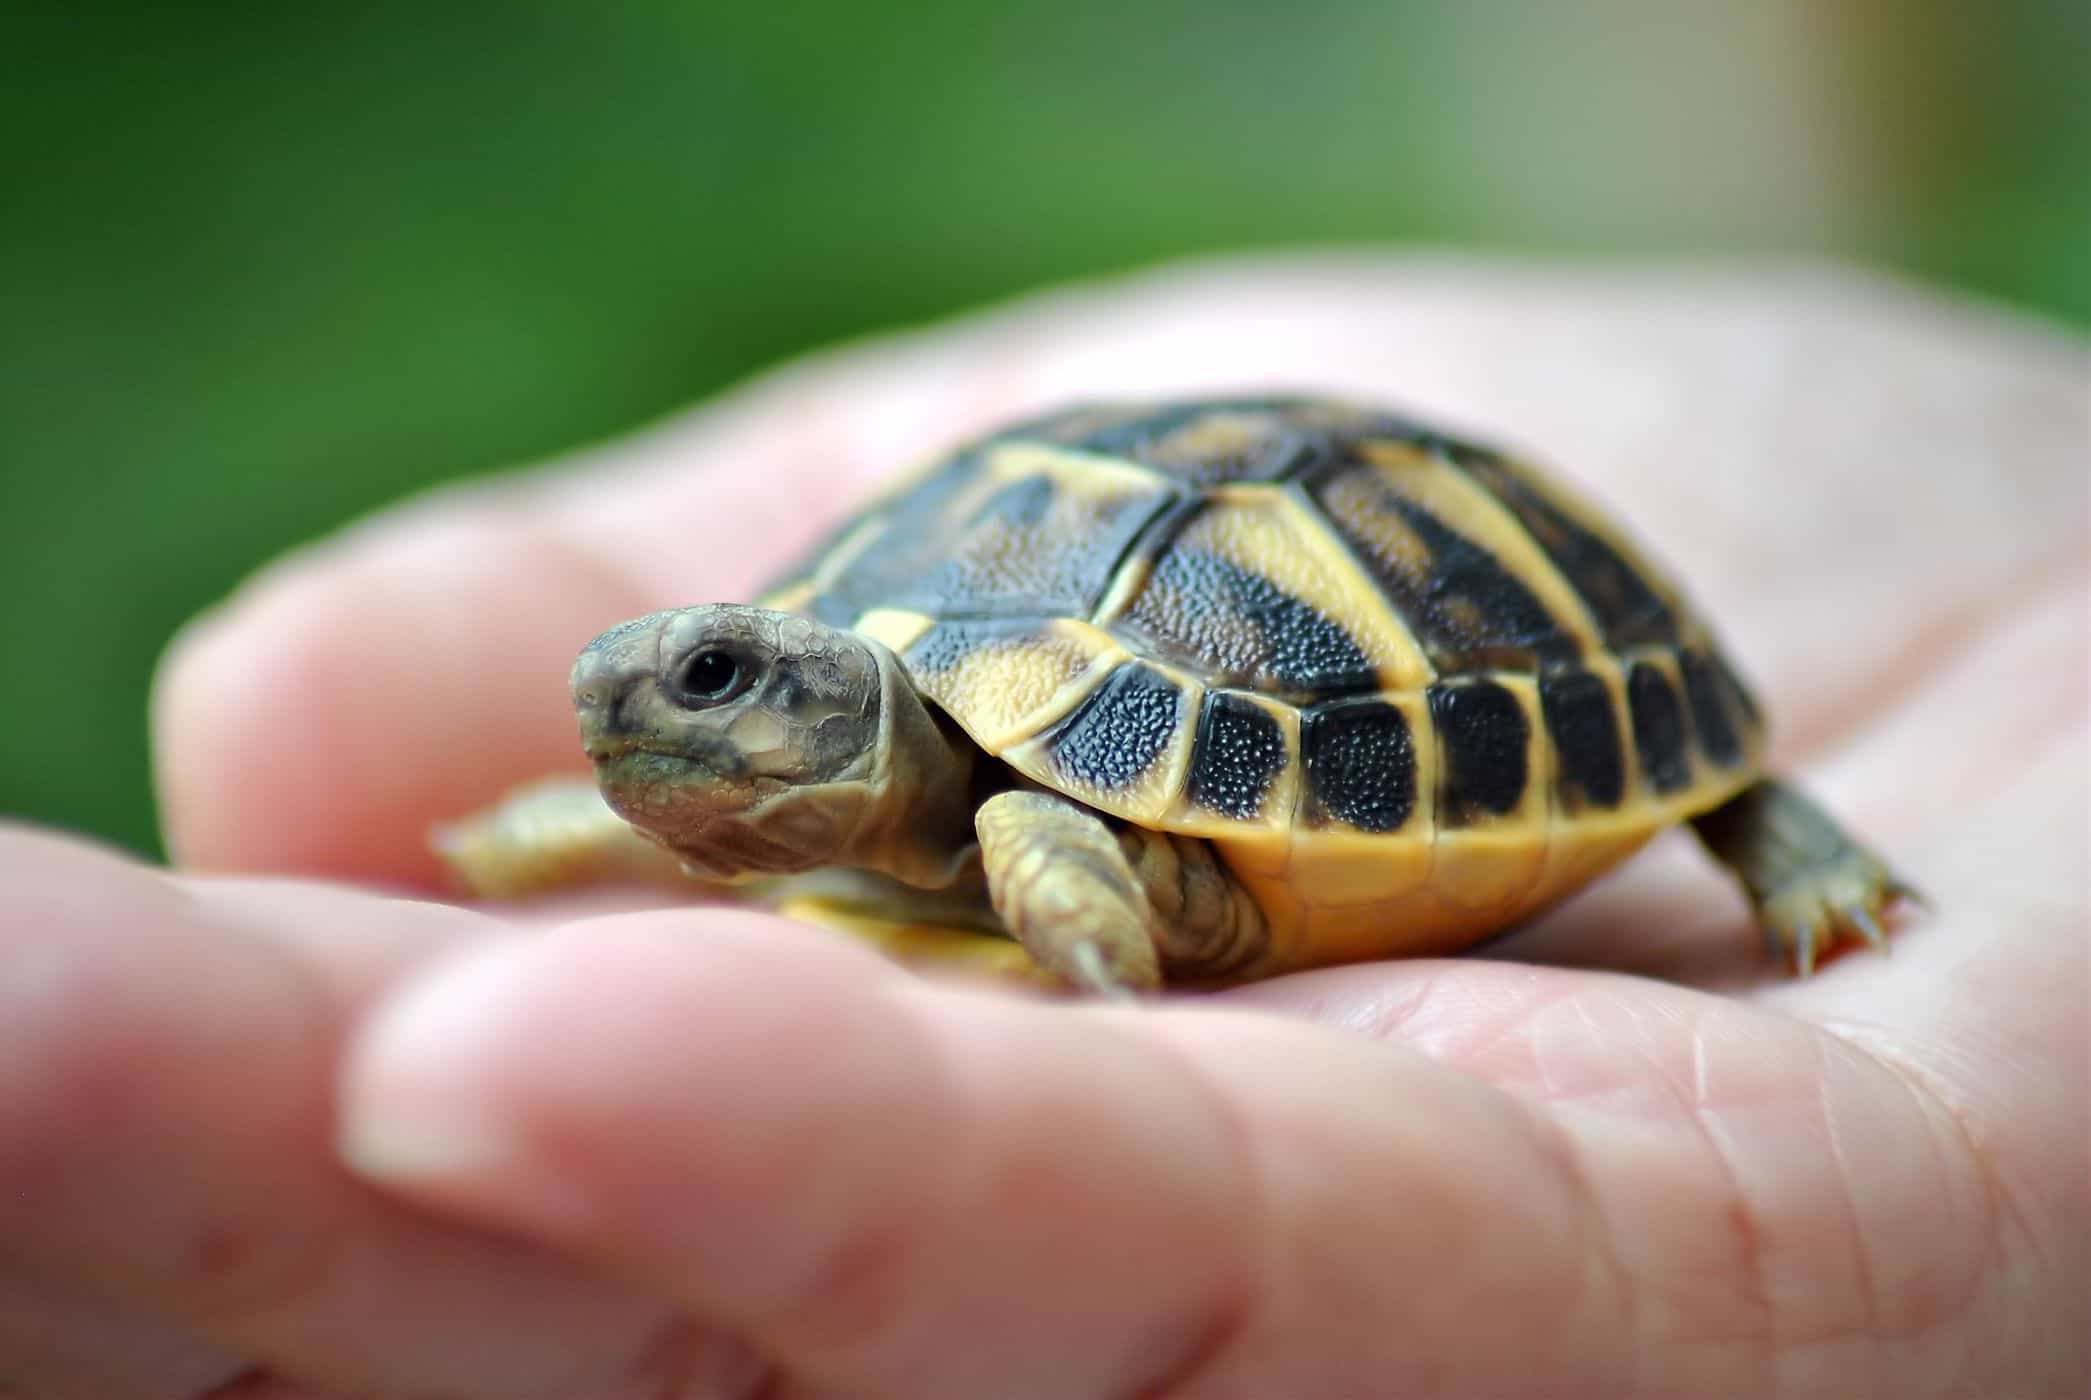 menținerea broaștelor țestoase crește riscul de infecție cu salmonella